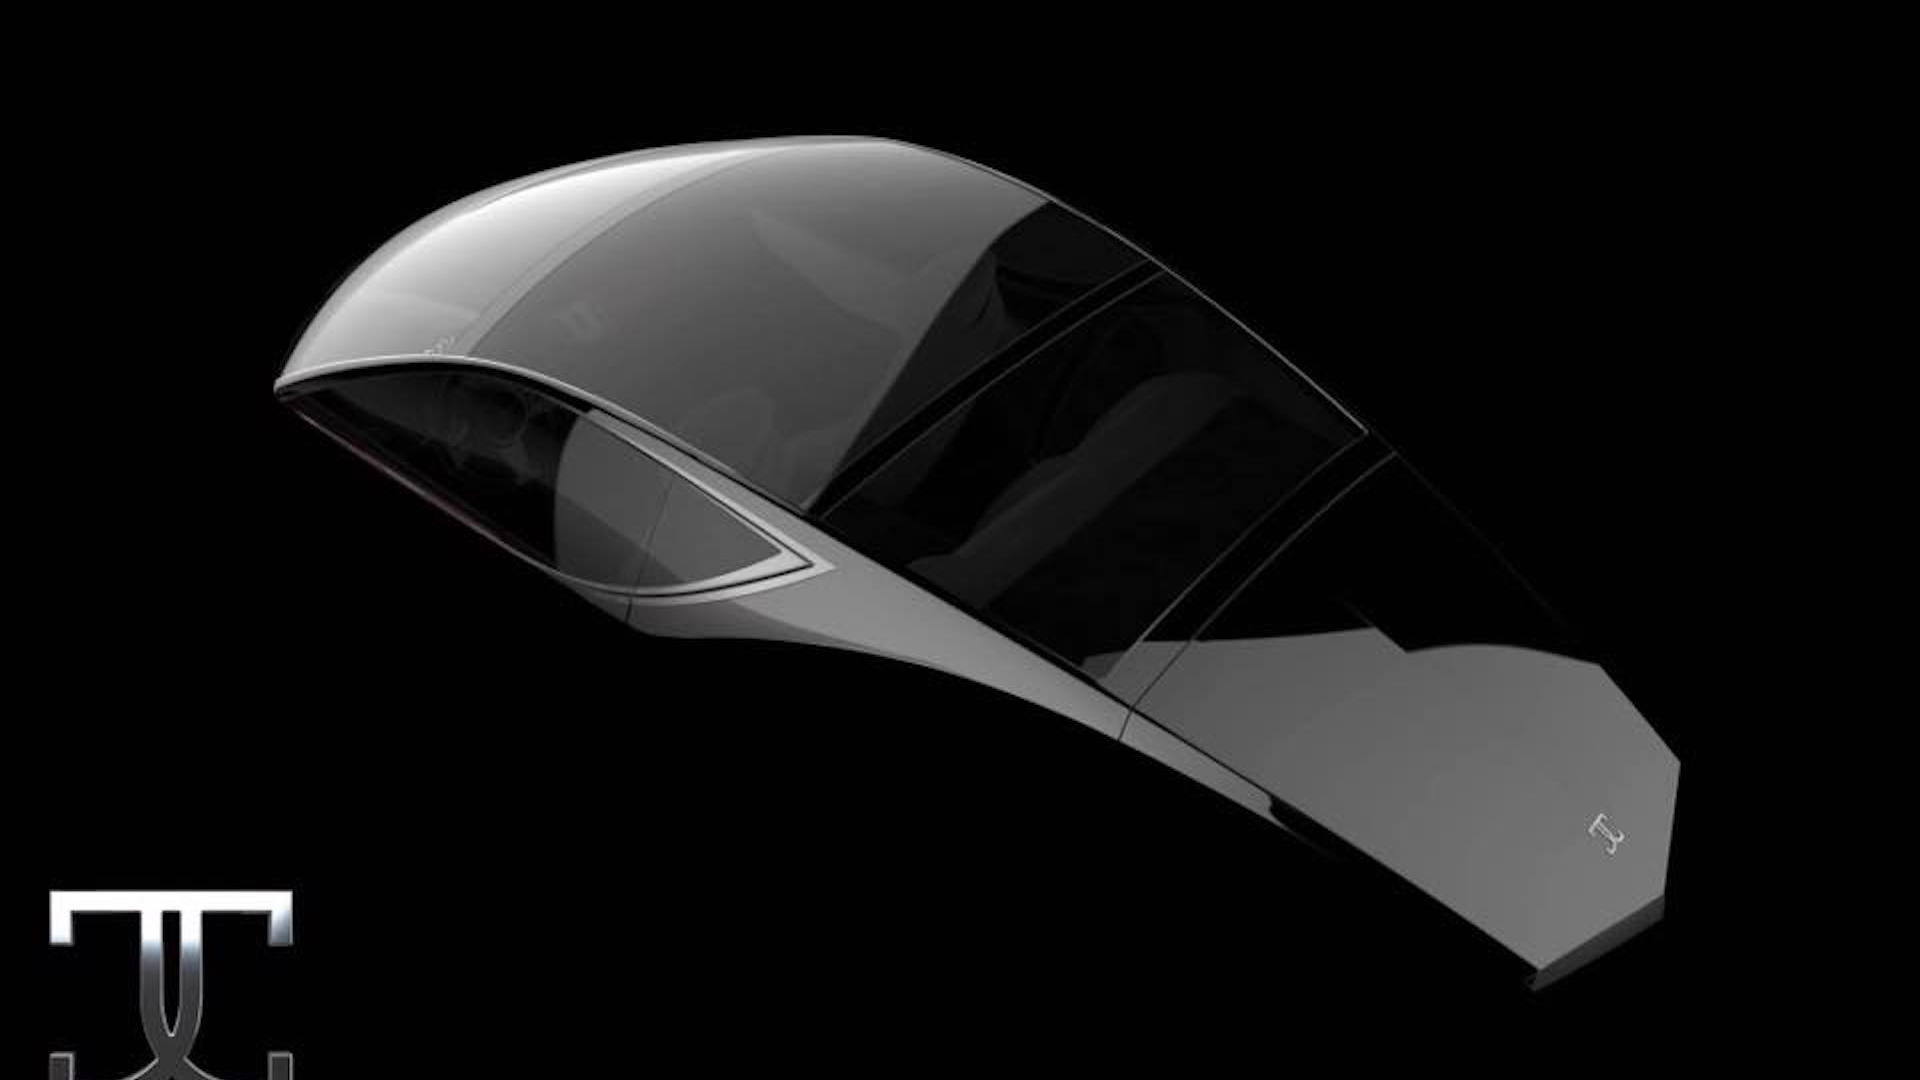 Godsil Manhattan V16 Super-Coupe teased